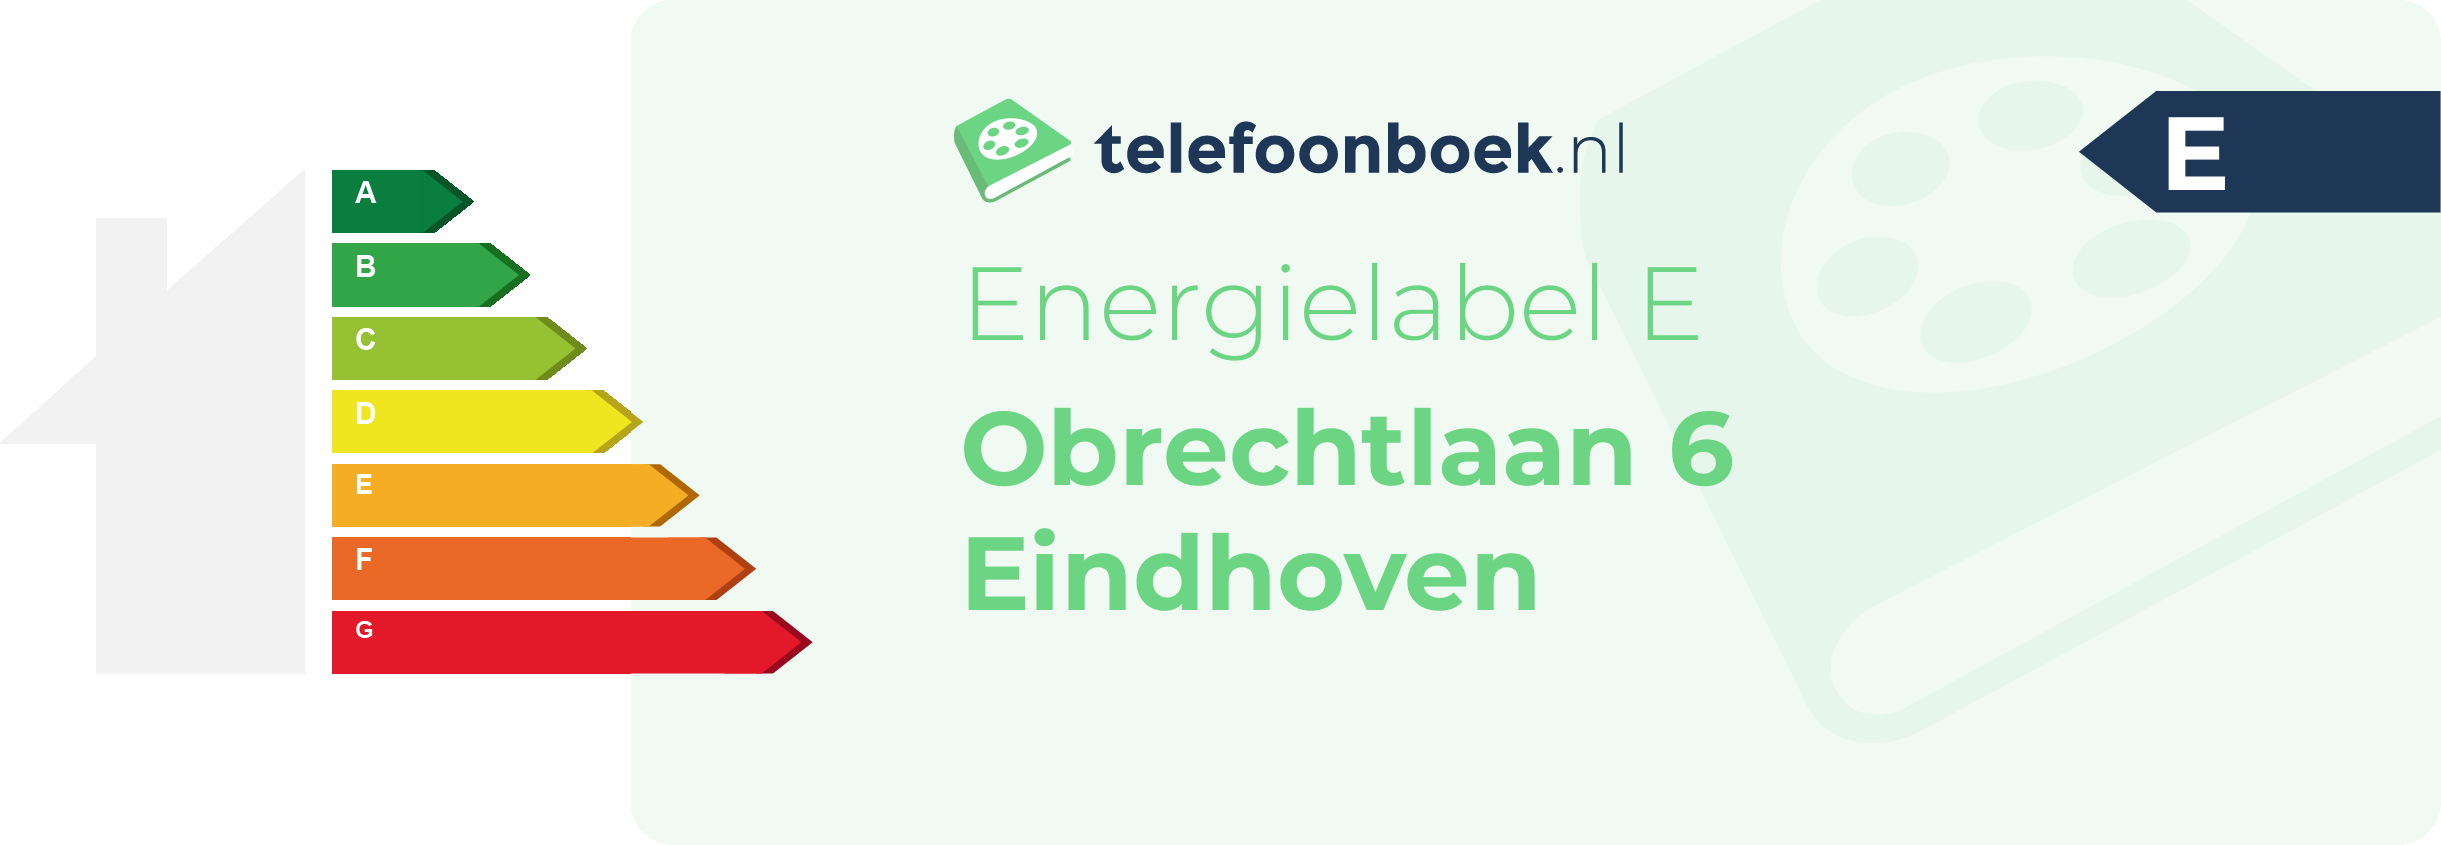 Energielabel Obrechtlaan 6 Eindhoven